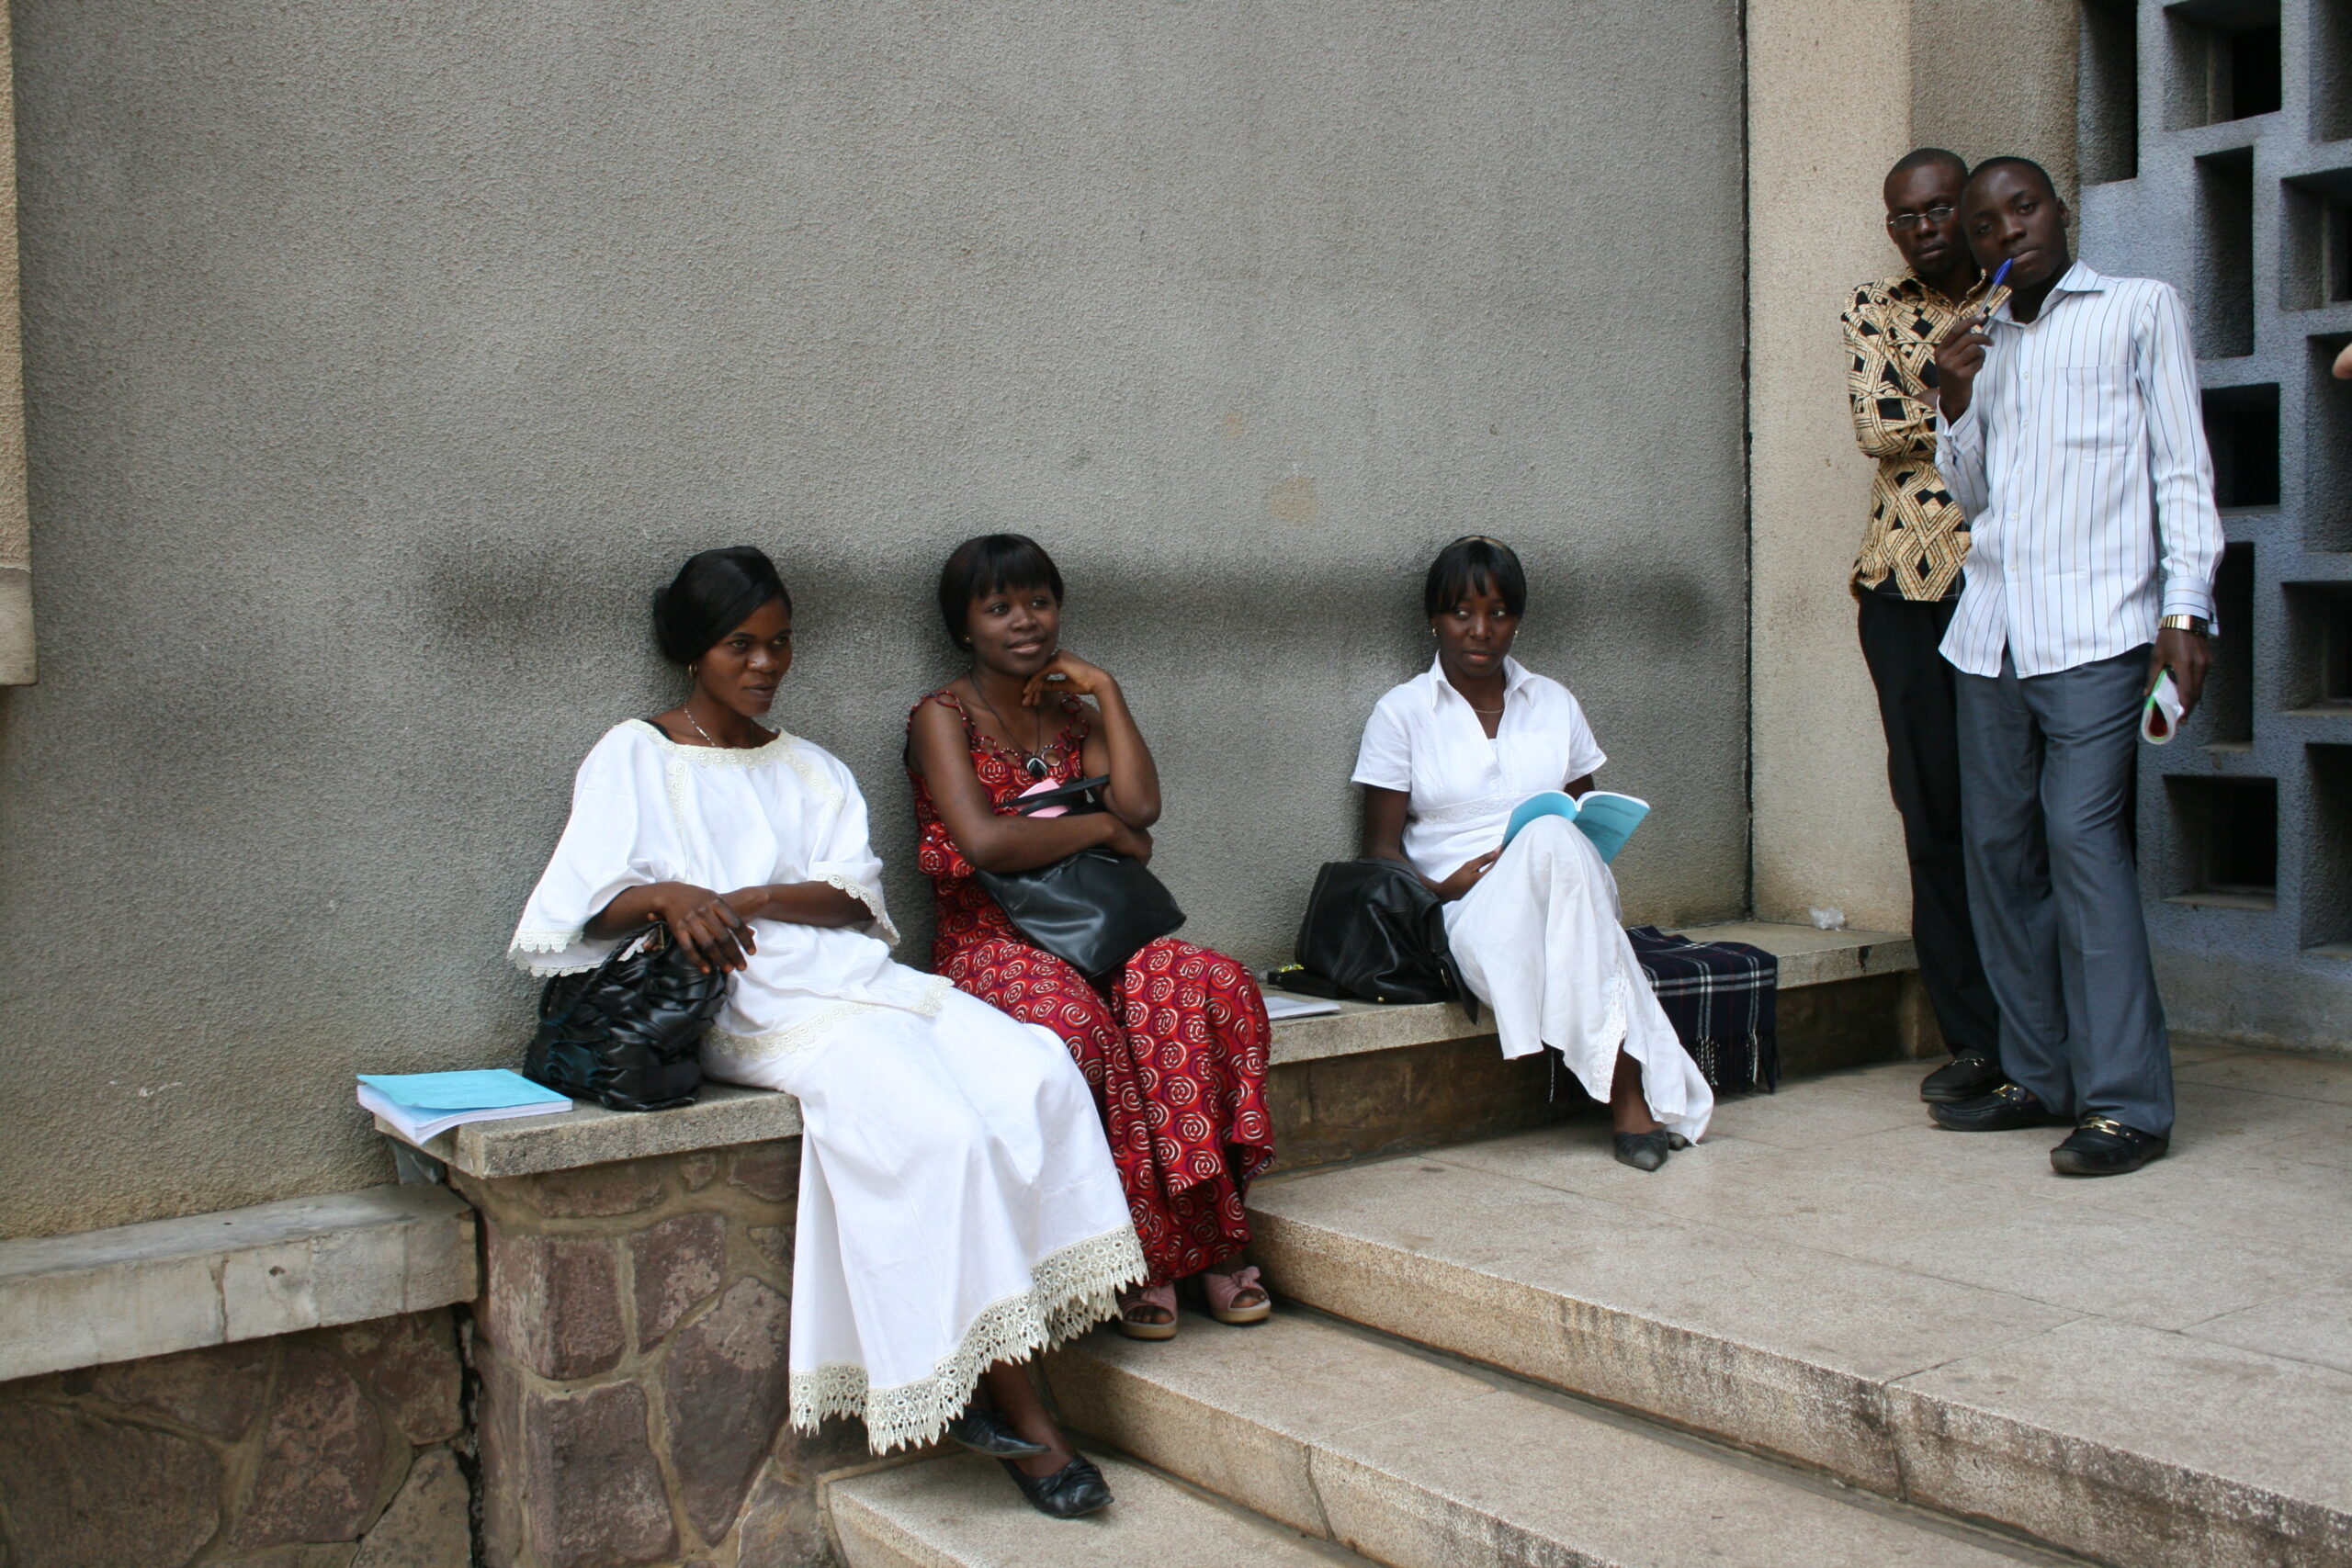 Students at University of Kinshasa